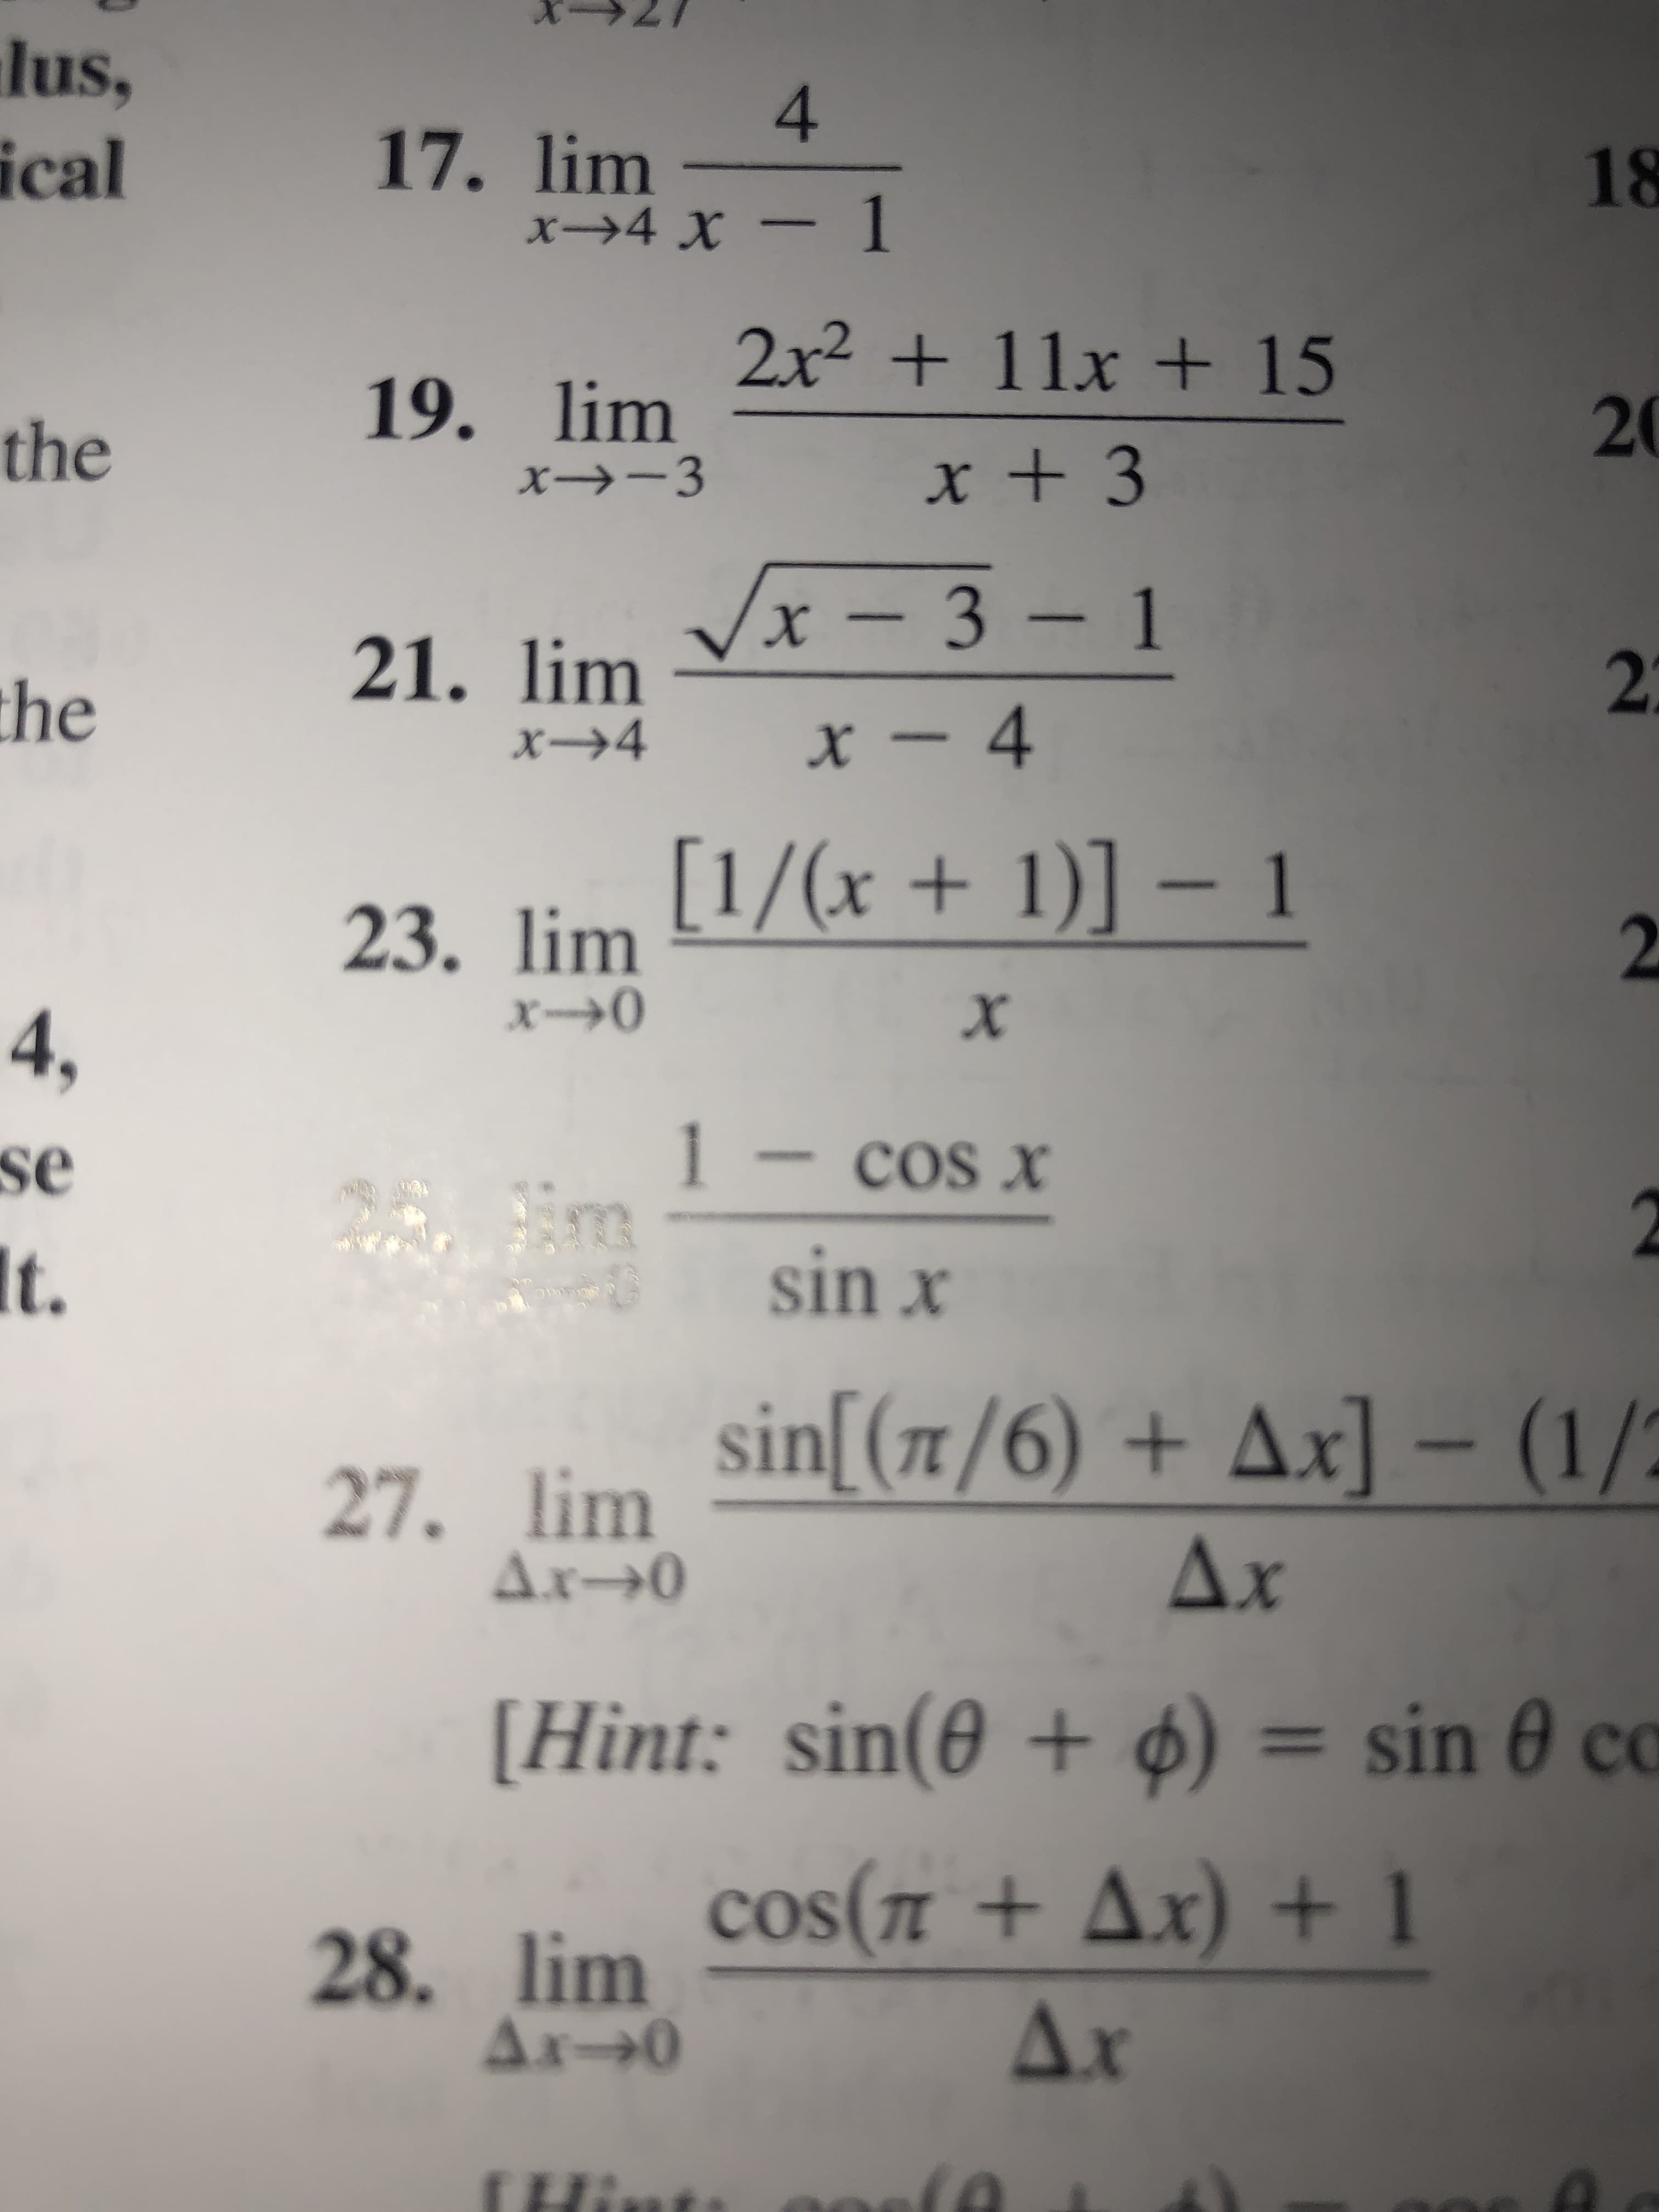 lus,
4
17. lim-
х->4 х — 1
ical
18
2x2+ 11x + 15
19. lim
20
the
xt 3
VxI3-1
х — 3 — 1
X
21. lim
2
the
x-4
x4
23. lim 1/(x + 1)] - 1
2
x0
х
4,
1-cos x
se
t.
sinx
27. lim Sin (T/6) + Ax] - (1/
Ax- O
Ax
[Hint: sin(0 + ) = sin 0 co
1
28. lim cos(+Ax) +1
Ax O
Ax
